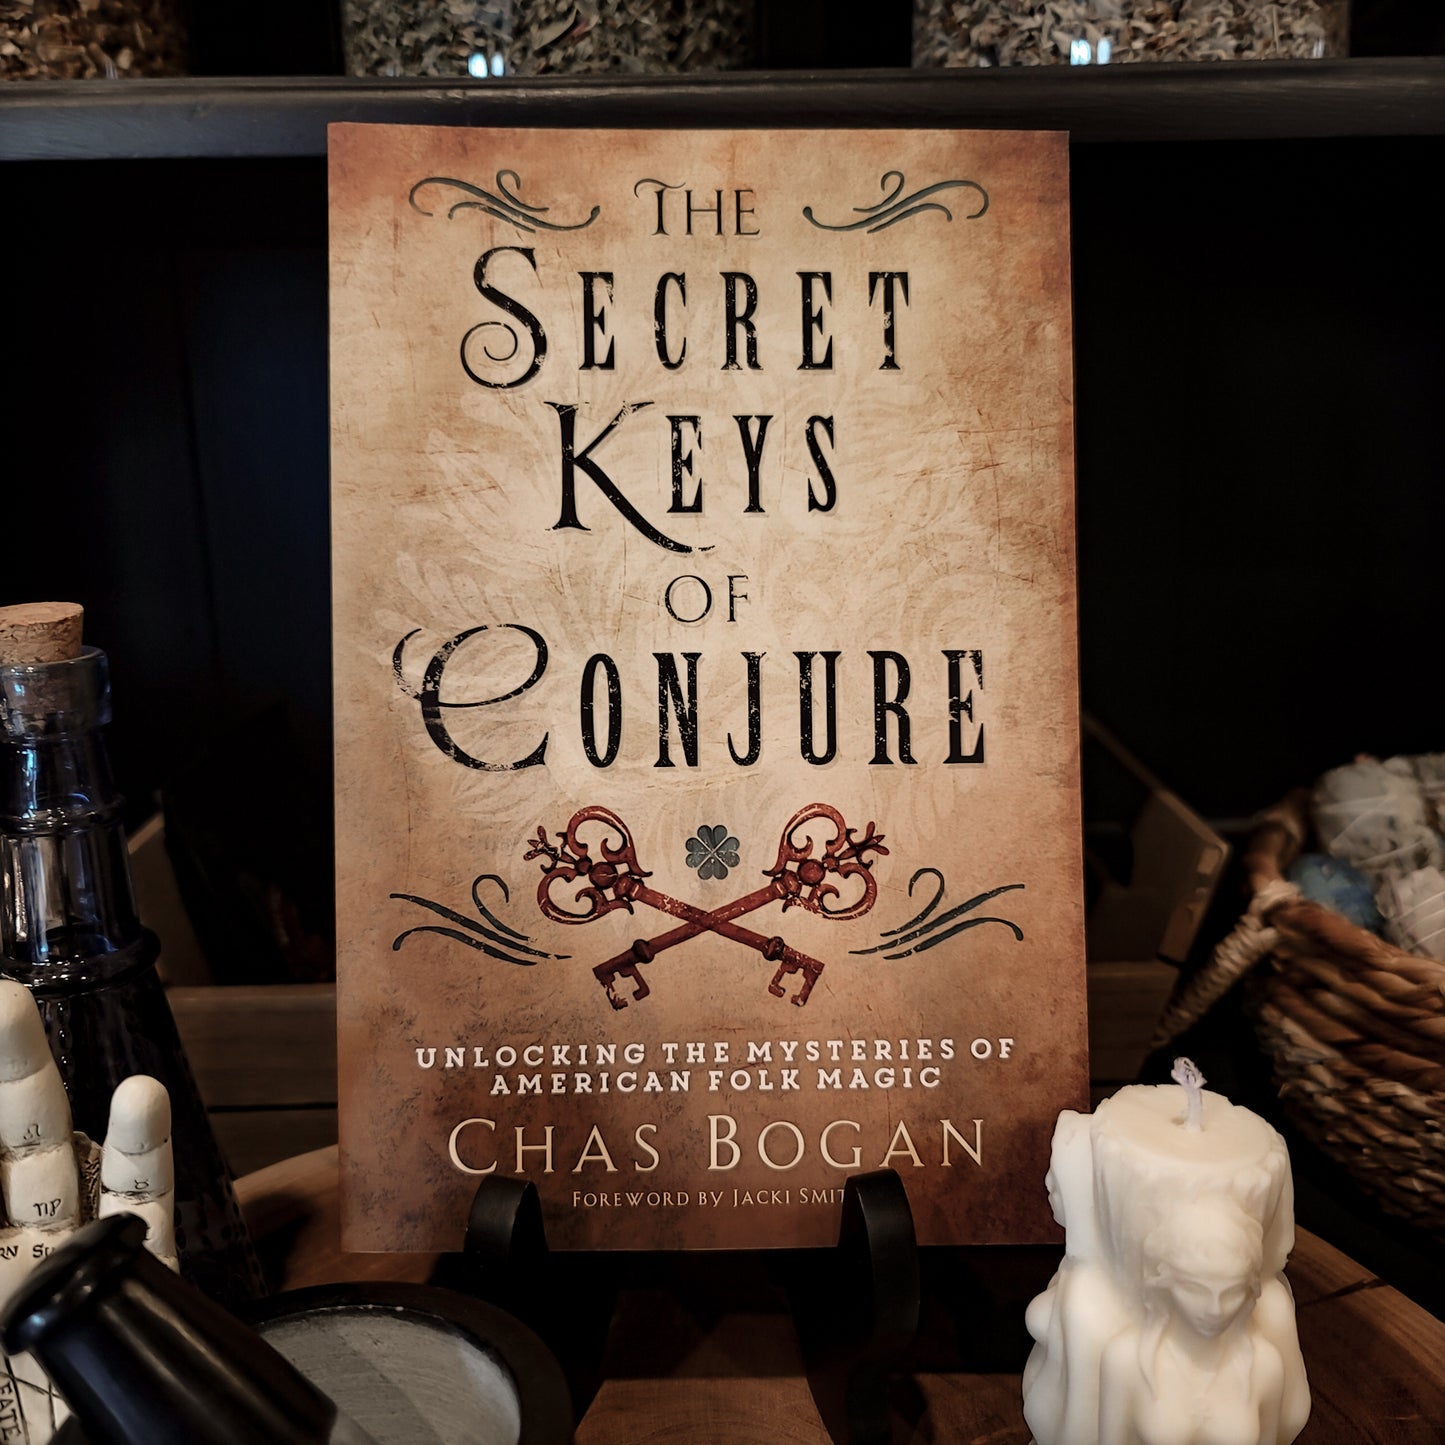 The Secret Keys of Conjure